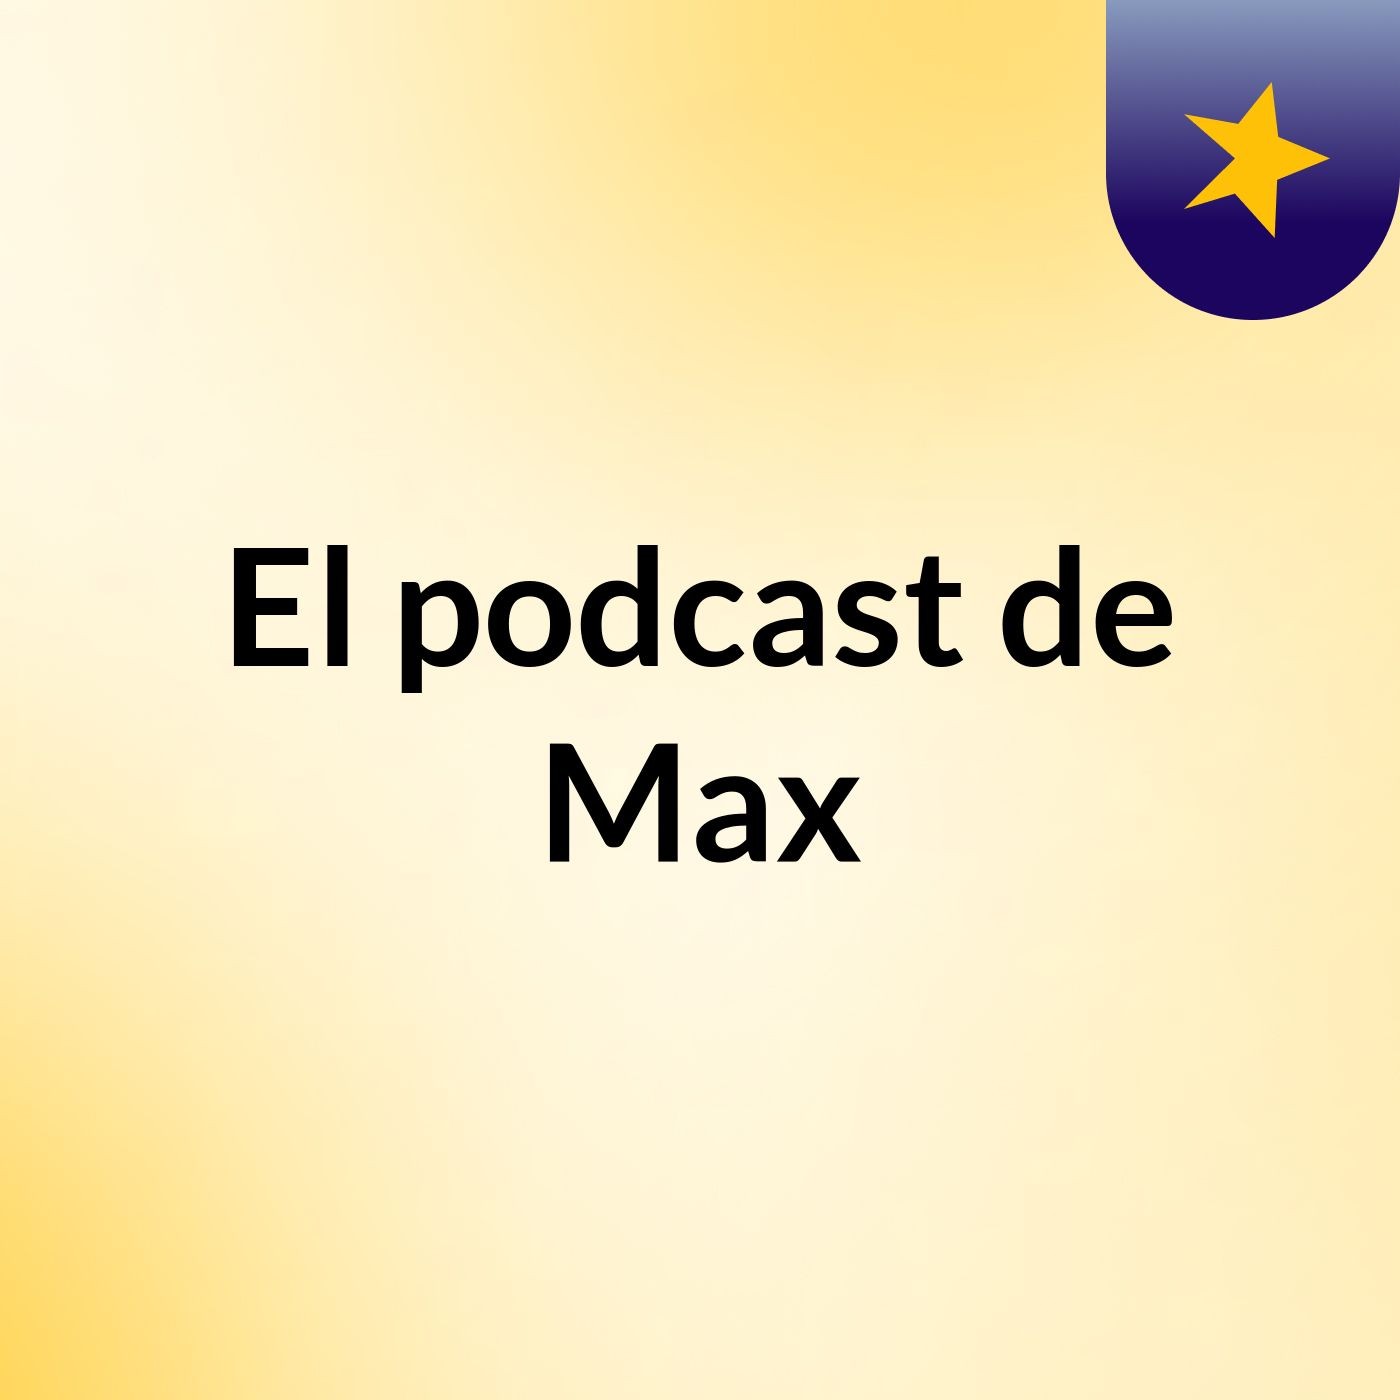 El podcast de Max